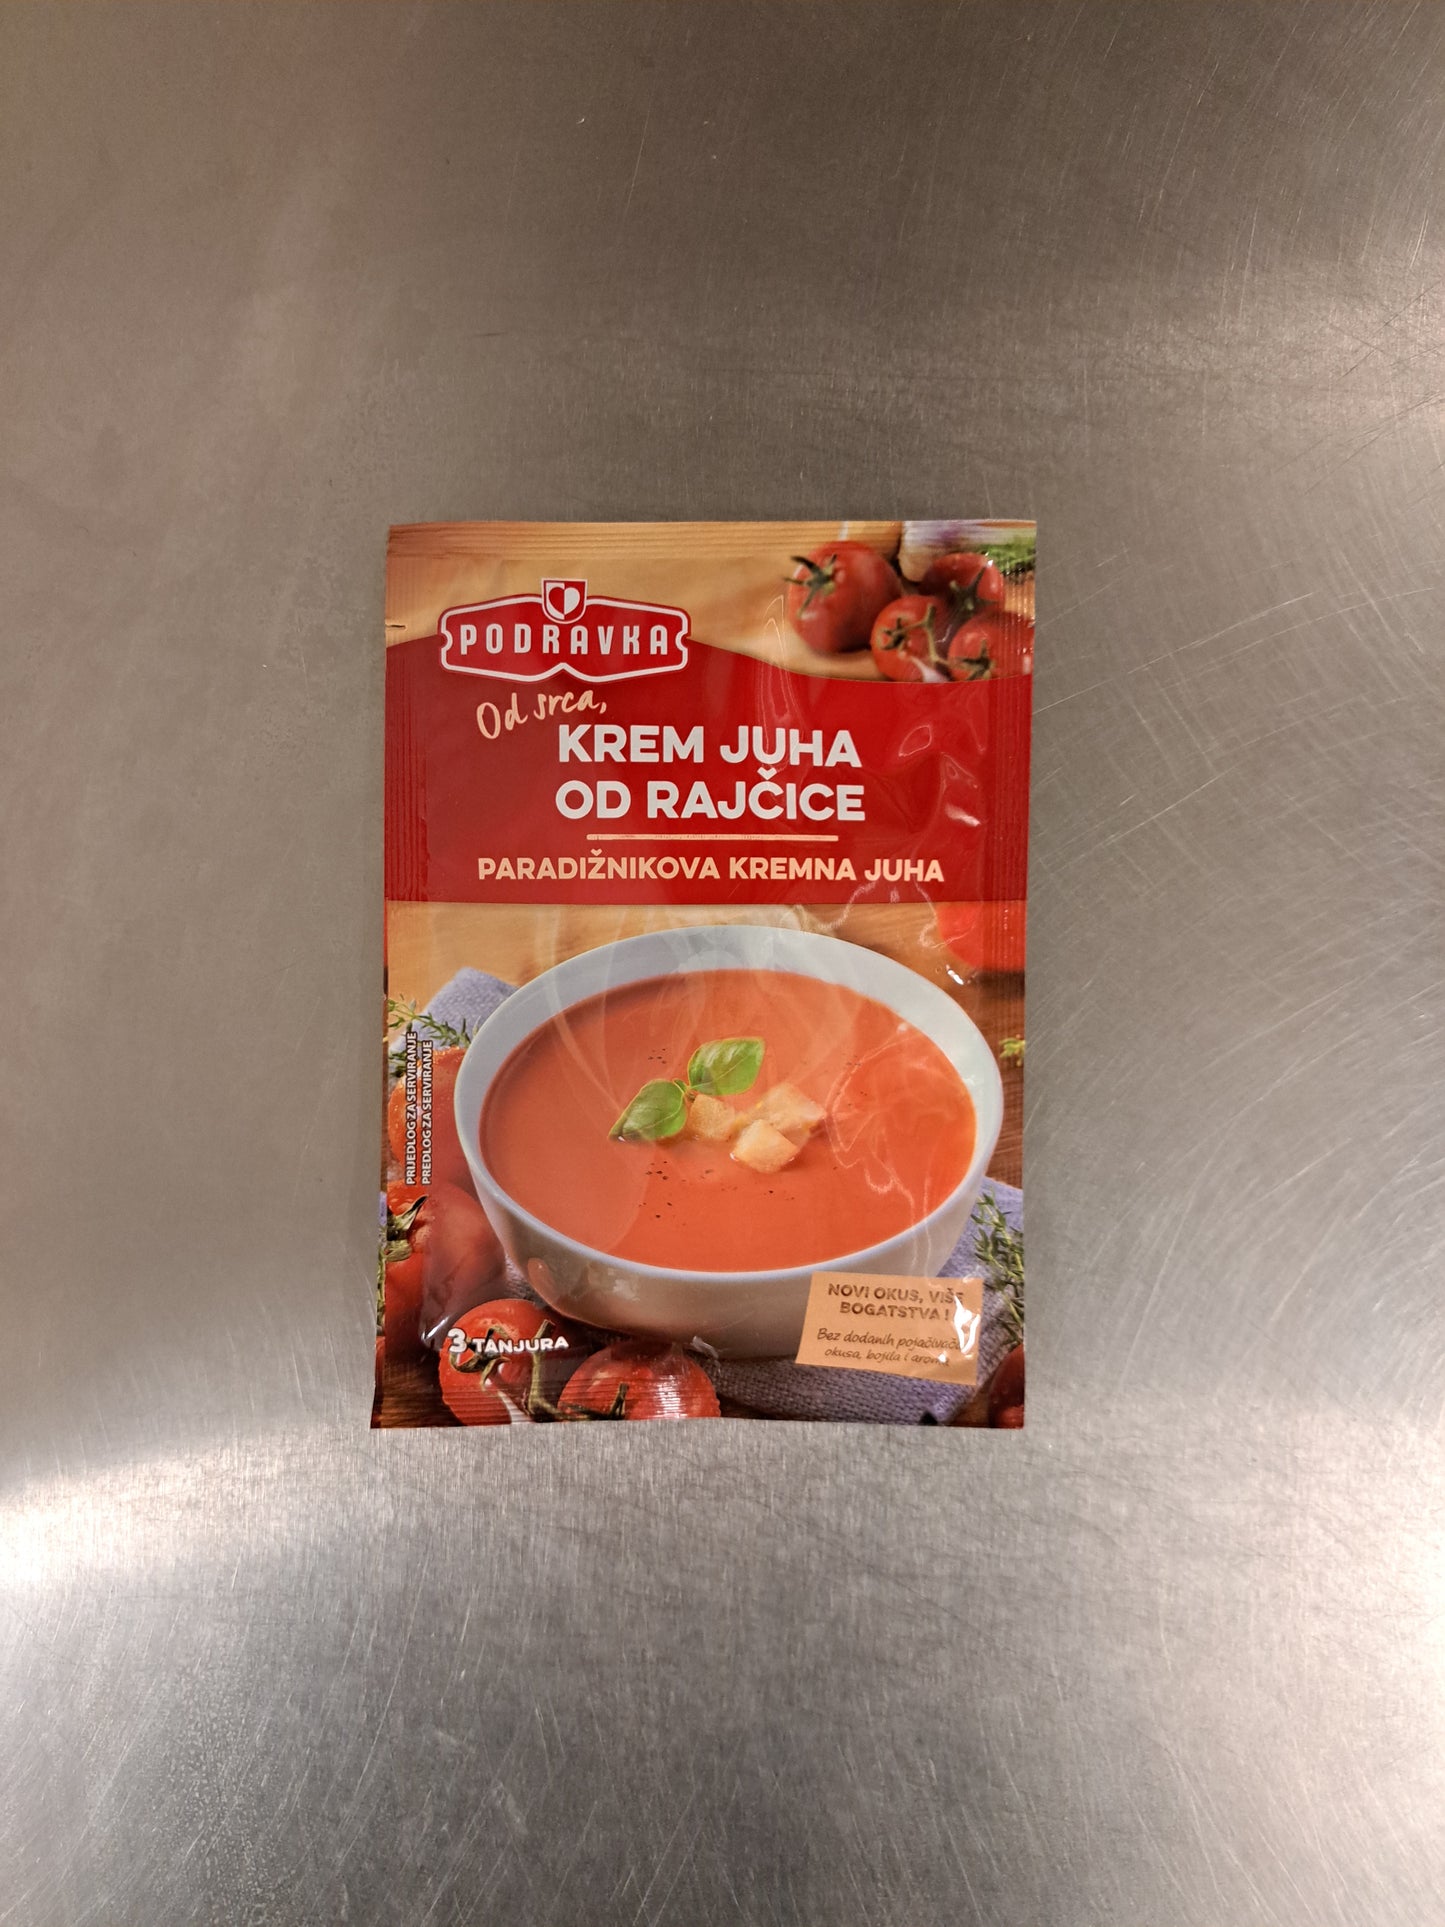 Podravka Krämig tomatsoppa - Krem juha od rajcice 60g